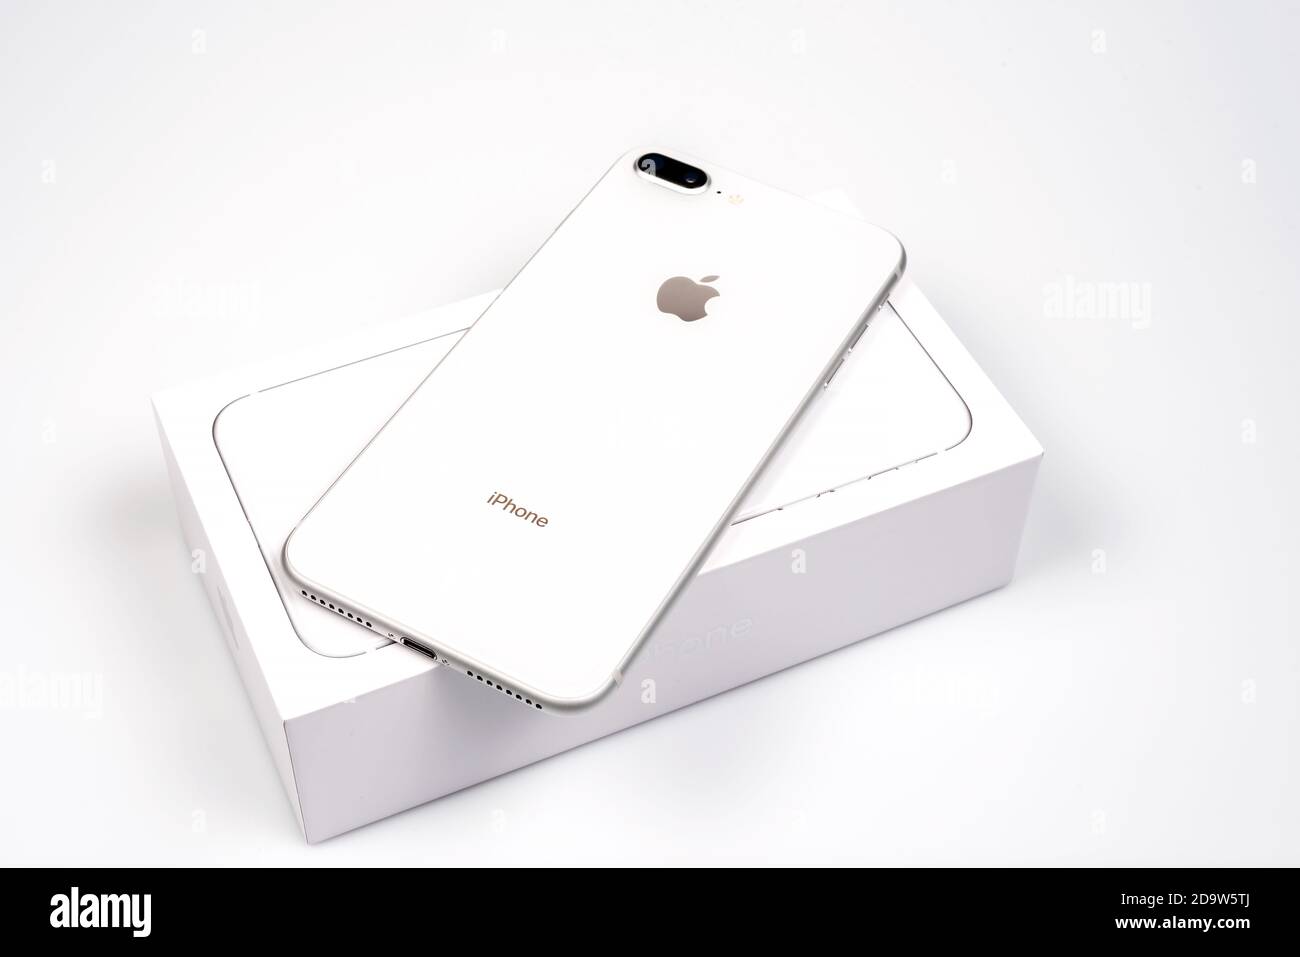 iPhone 8: Không chỉ sở hữu thiết kế đẹp mắt mà chiếc iPhone 8 còn được trang bị cấu hình mạnh mẽ để đáp ứng nhu cầu của người dùng. Với đầy đủ tính năng và không gian lưu trữ rộng rãi, chiếc iPhone 8 sẽ là sự lựa chọn hoàn hảo cho những ai muốn sở hữu một chiếc điện thoại chất lượng.